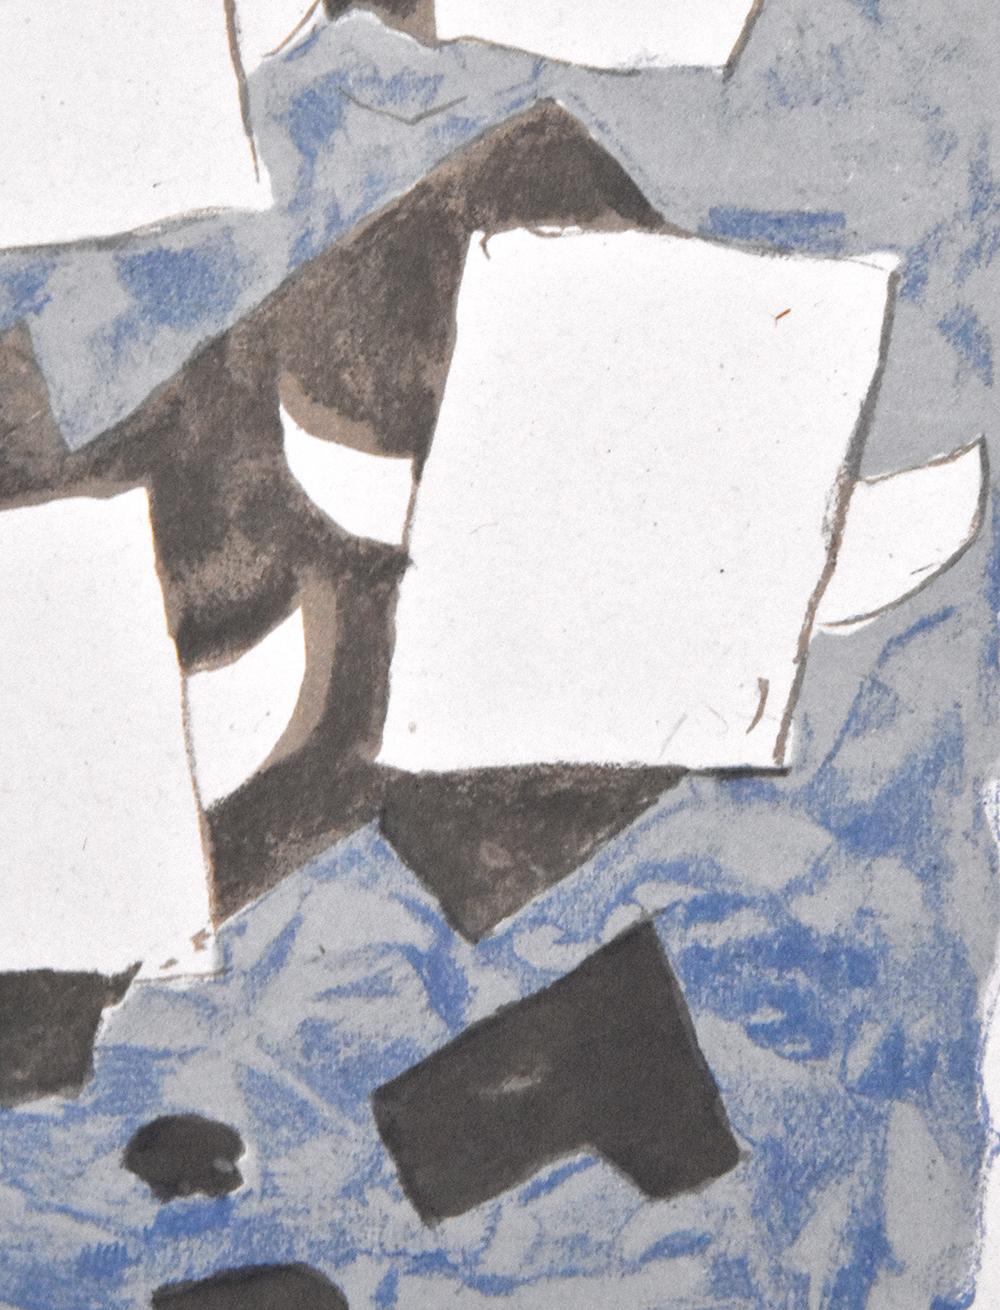 Das abstrakte Gemälde Le tir à l'arc (Das Bogenschießen) von Georges Braque aus dem Jahr 1960 spielt mit sich wiederholenden Motiven, die immer wieder leicht variieren. Vier weiße, rechteckige Figuren, die in einer quadratischen Formation angeordnet